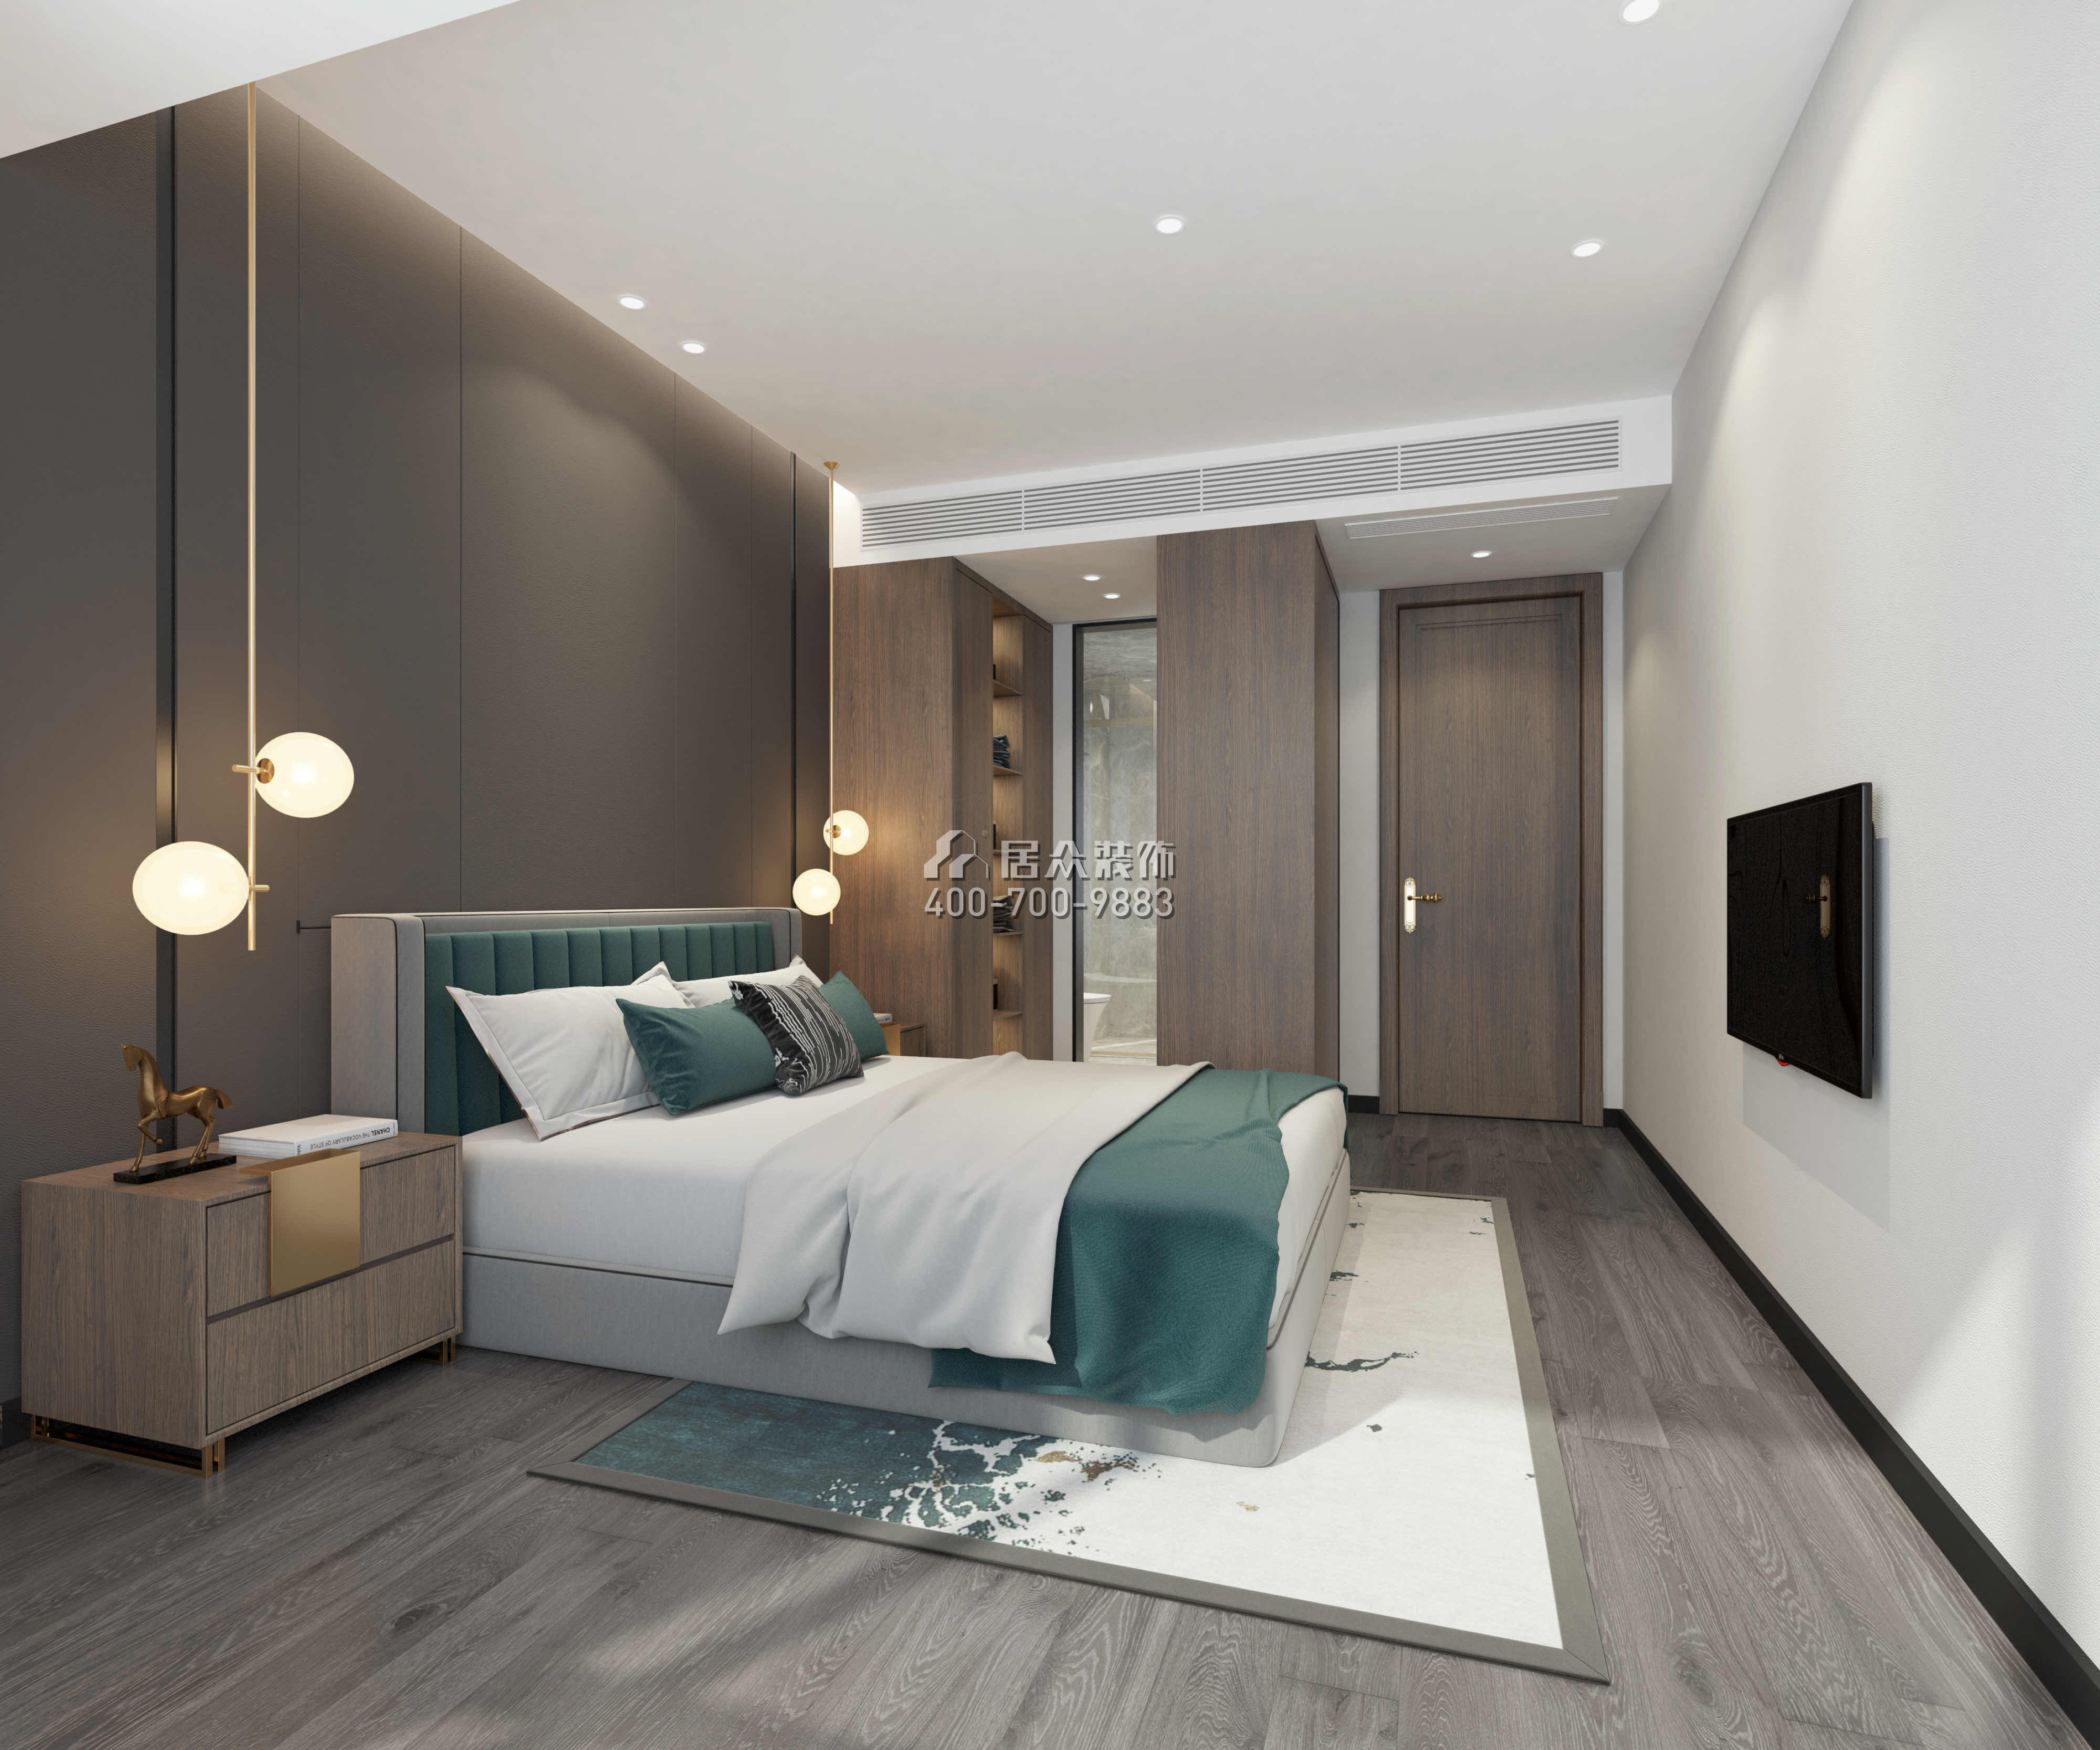 翠沁阁149平方米中式风格平层户型卧室装修效果图